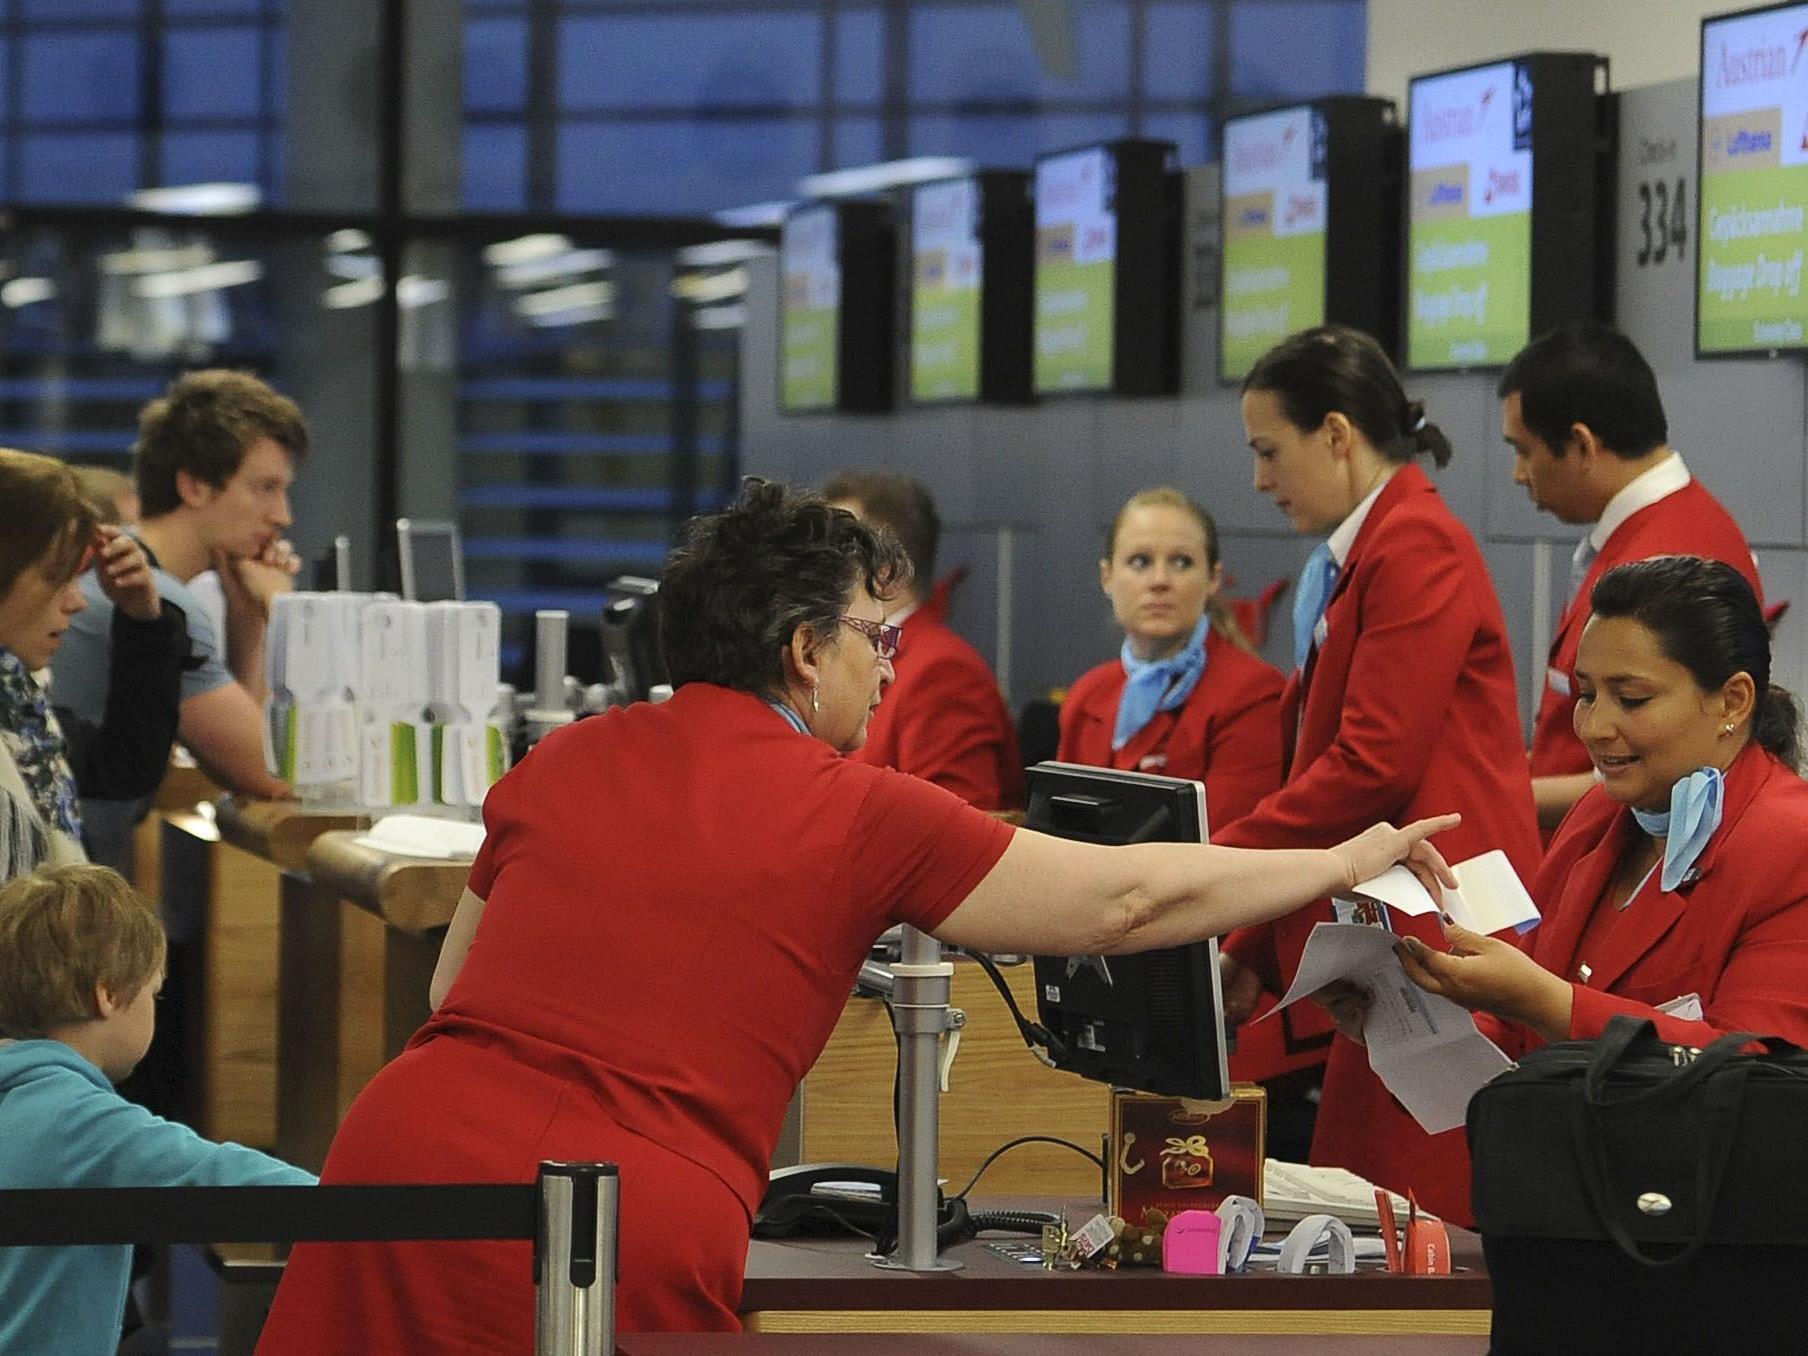 Derzeit sind europäische Flughäfen verpflichtet, bei Ausschreibungen mindestens zwei Bewerber zu haben.